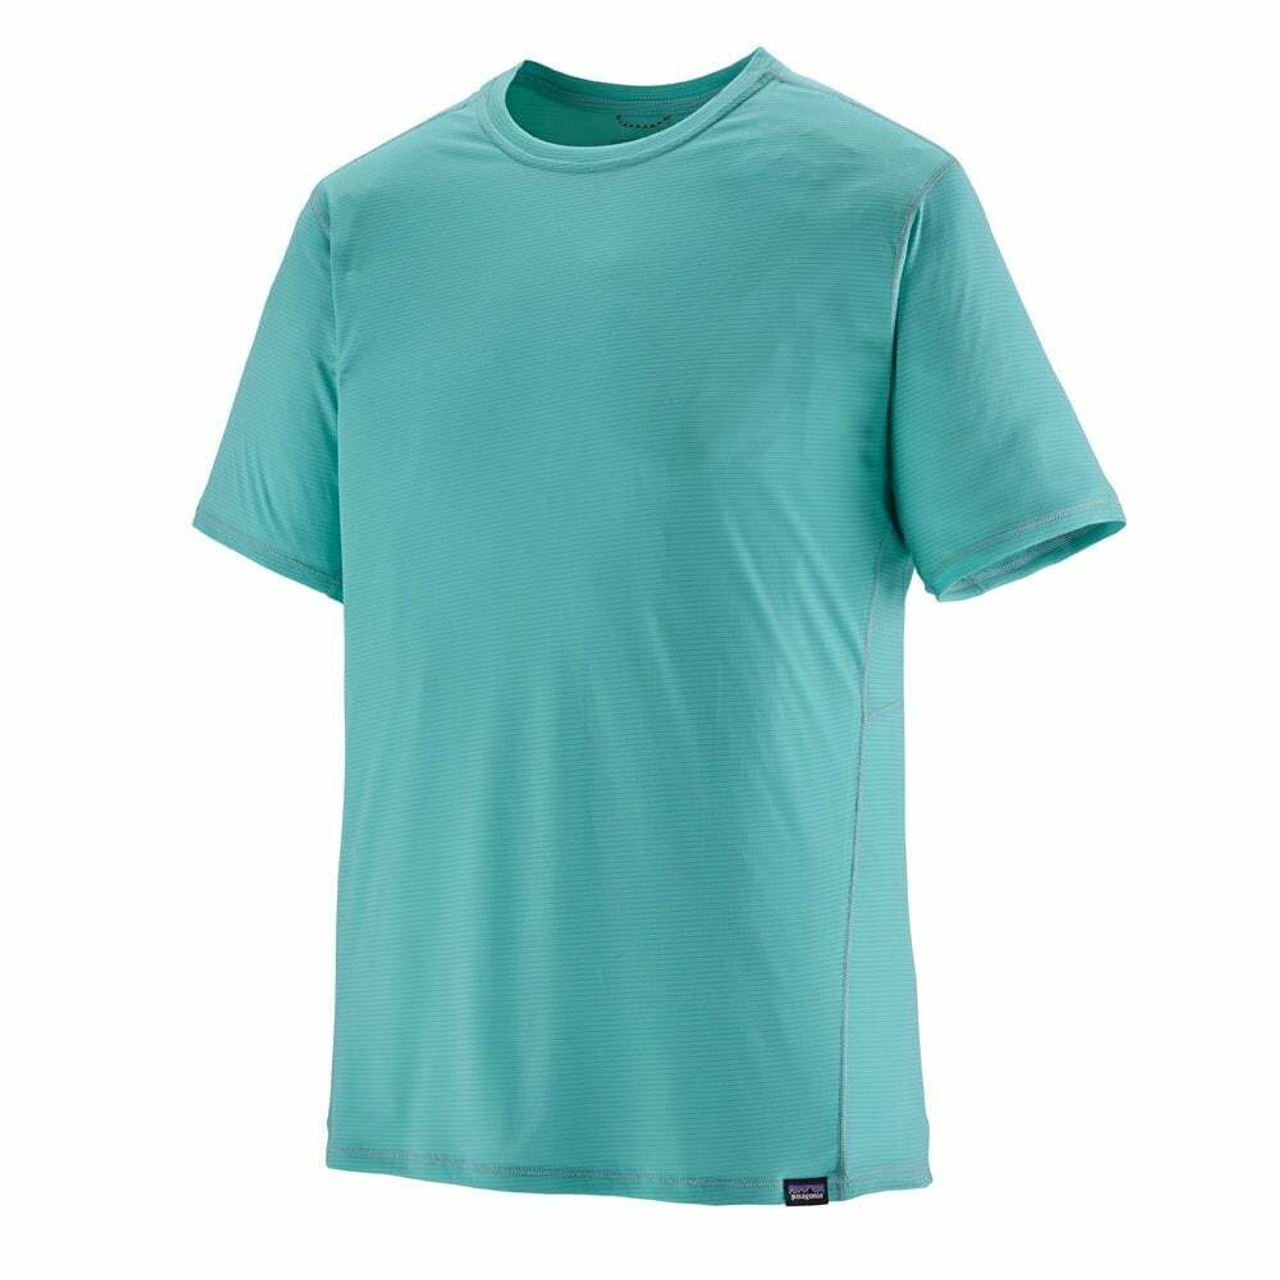 Patagonia Men's Capilene Cool Daily Shirt S / Buckhorn Green - Light Buckhorn Green X-Dye